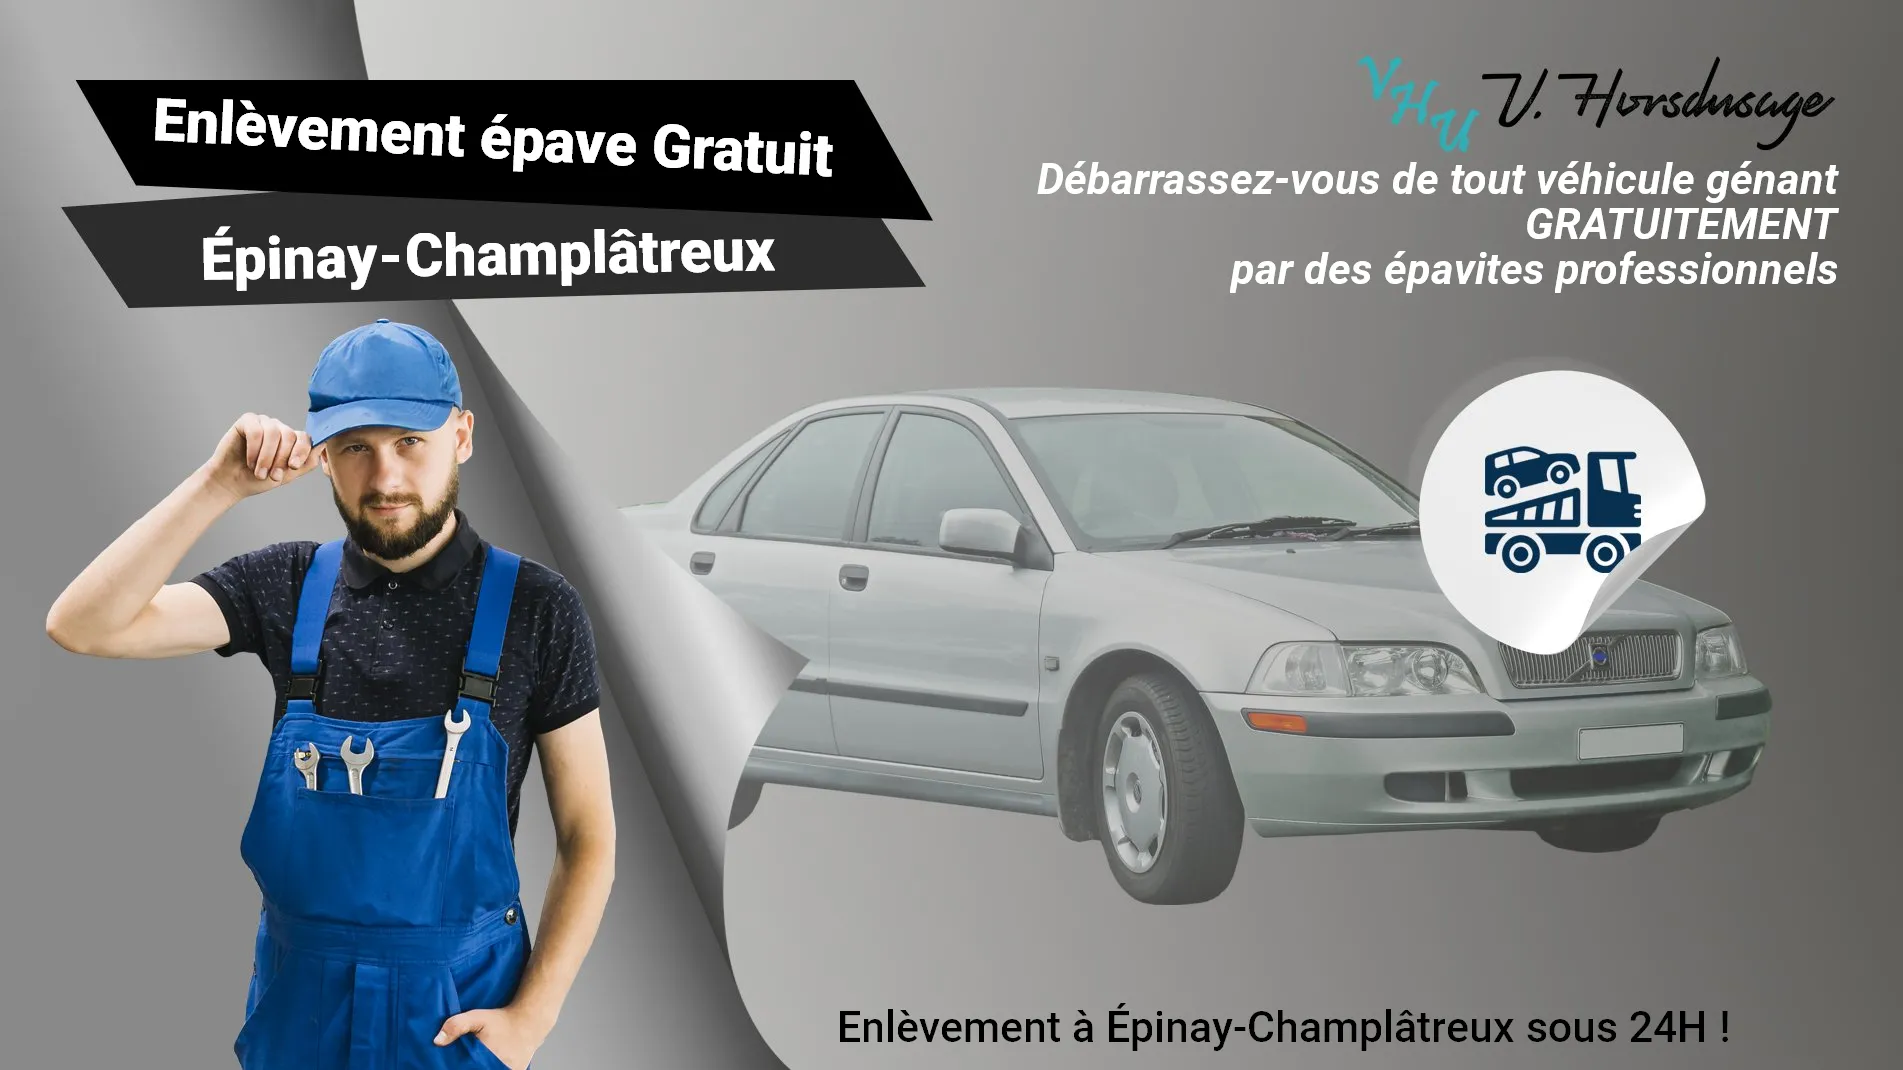 Pour un enlèvement gratuit à Épinay-Champlâtreux, contactez nos épavistes agréé VHU